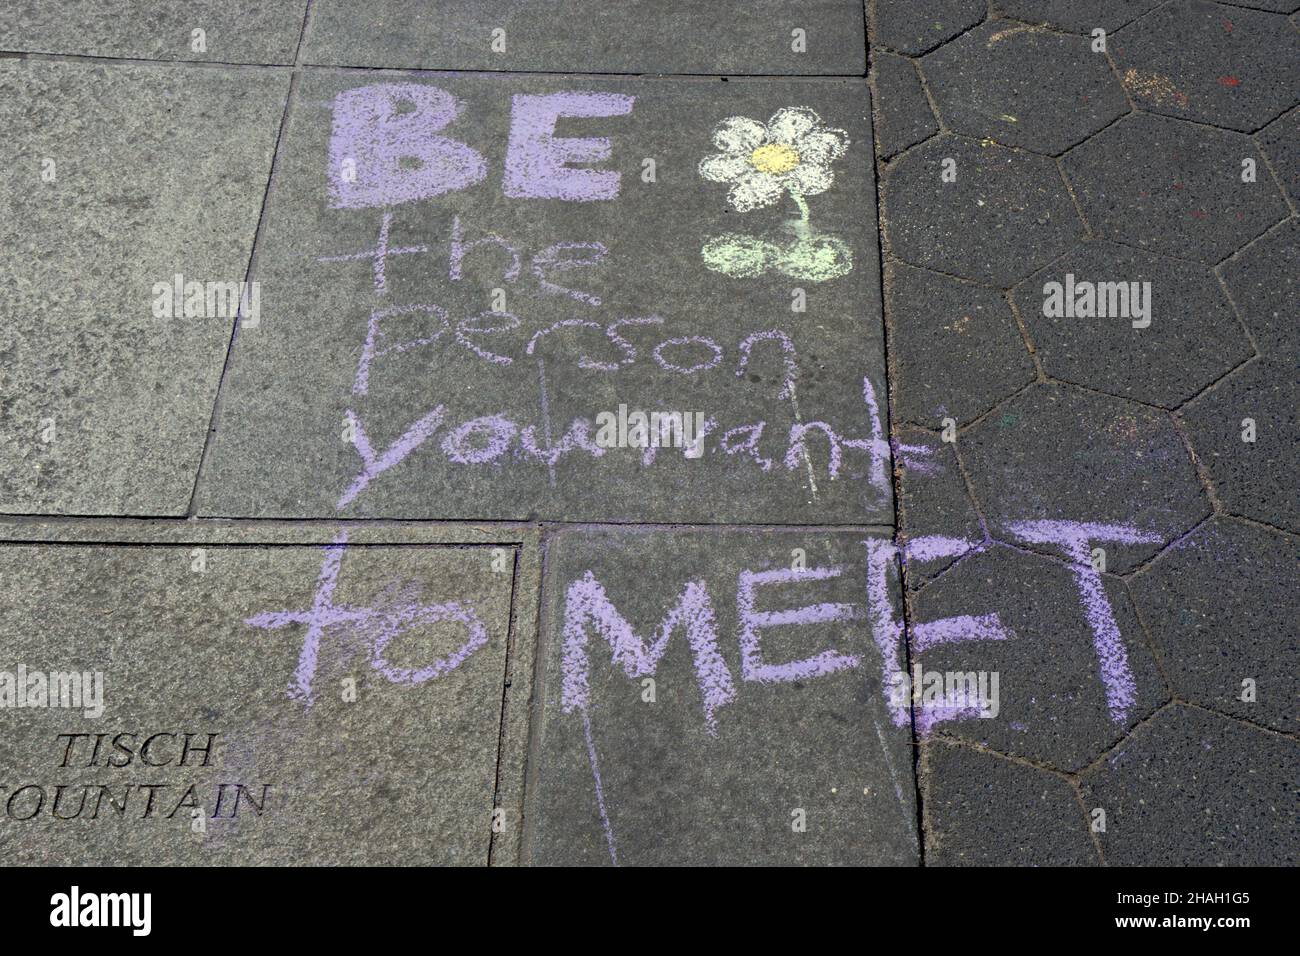 Un message de craie suggérant qu'on devienne la personne qu'ils souhaitent eux-mêmes rencontrer.Près de la fontaine du parc Washington Square Banque D'Images